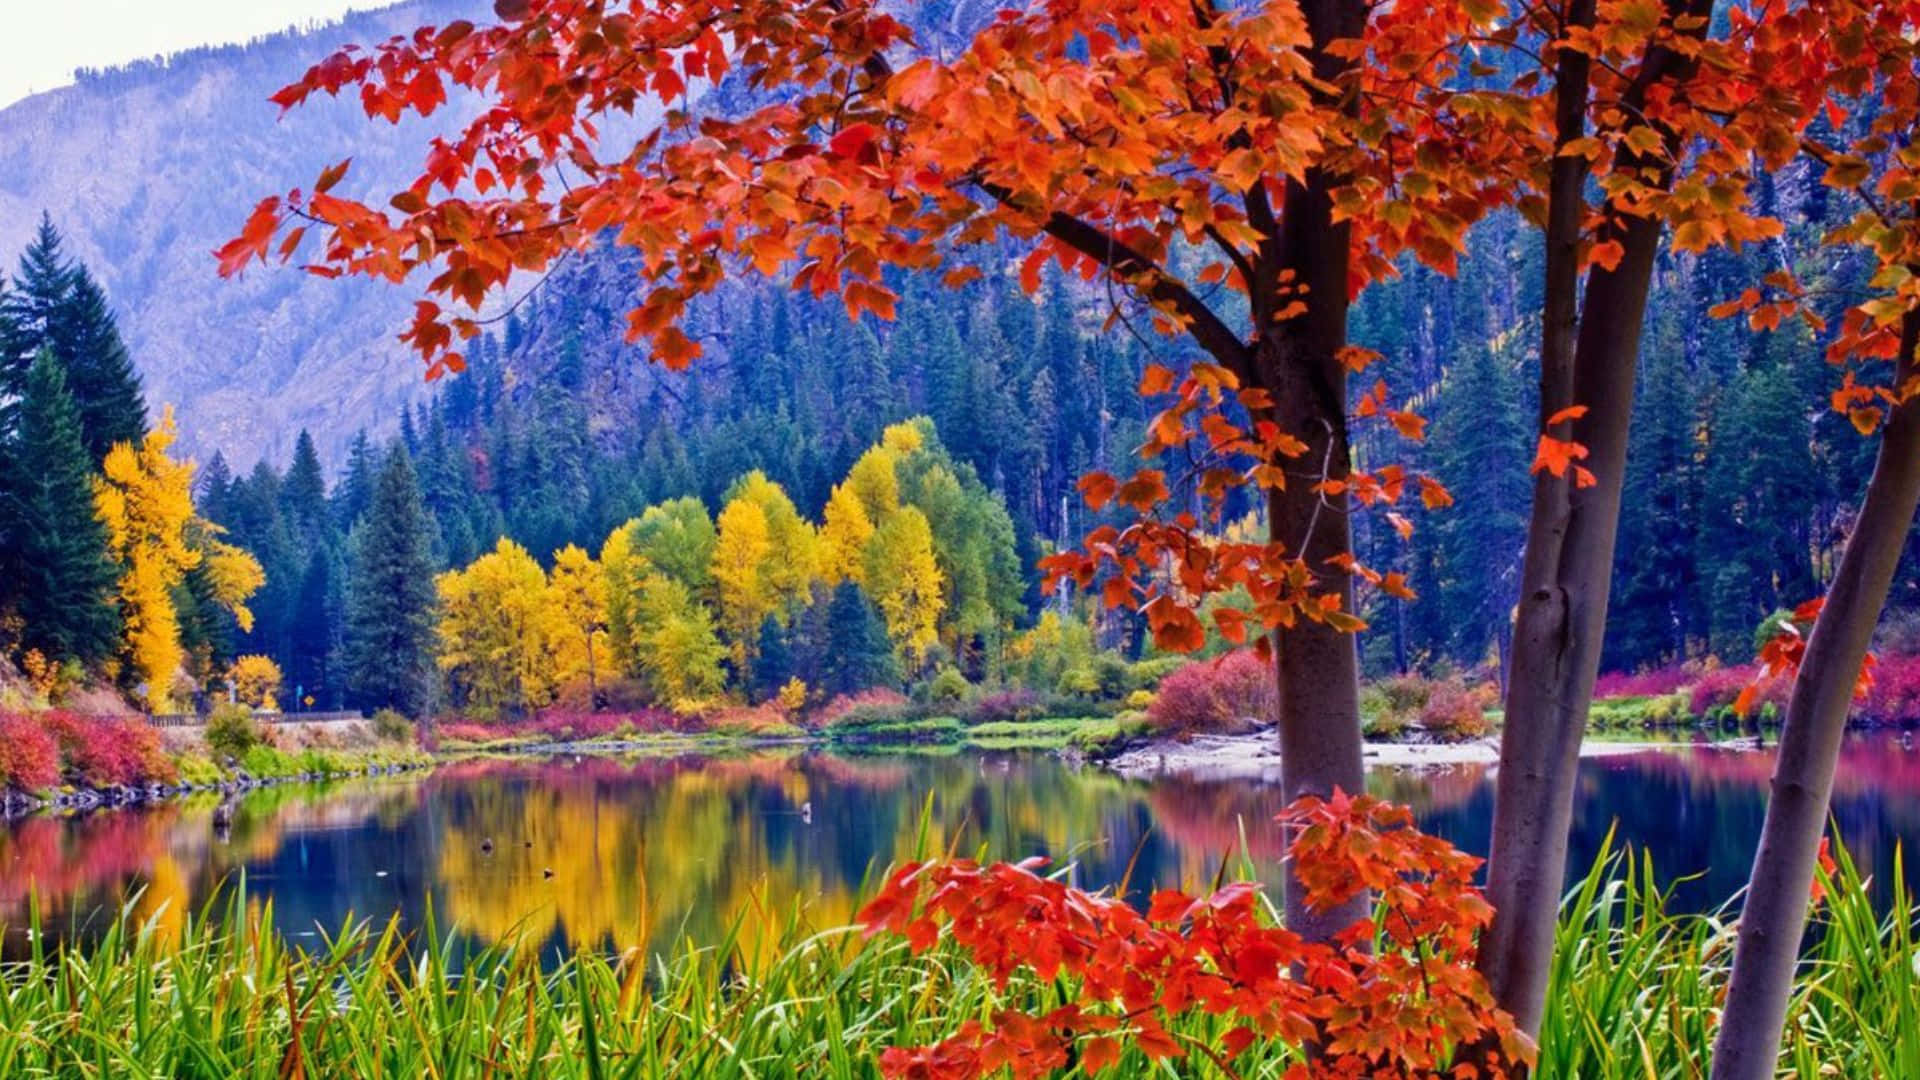 Stunning Fall Foliage Scenery Wallpaper